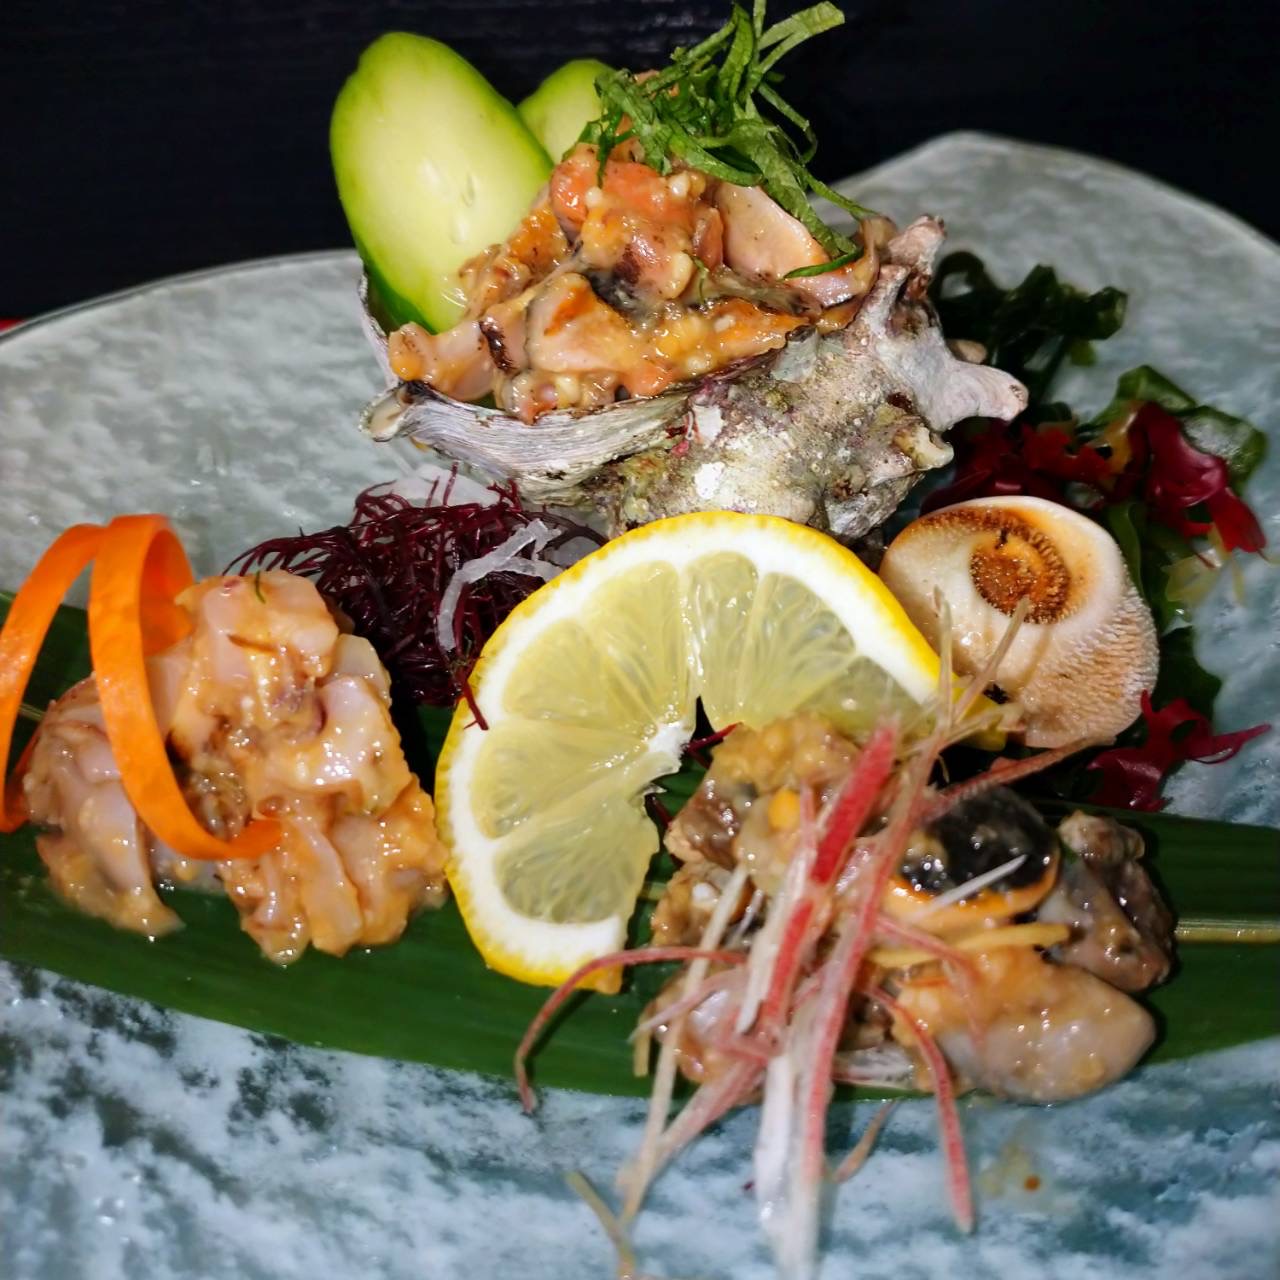 サザエのなめろう 海の恵み 食の底力 Japan 公式レシピサイト